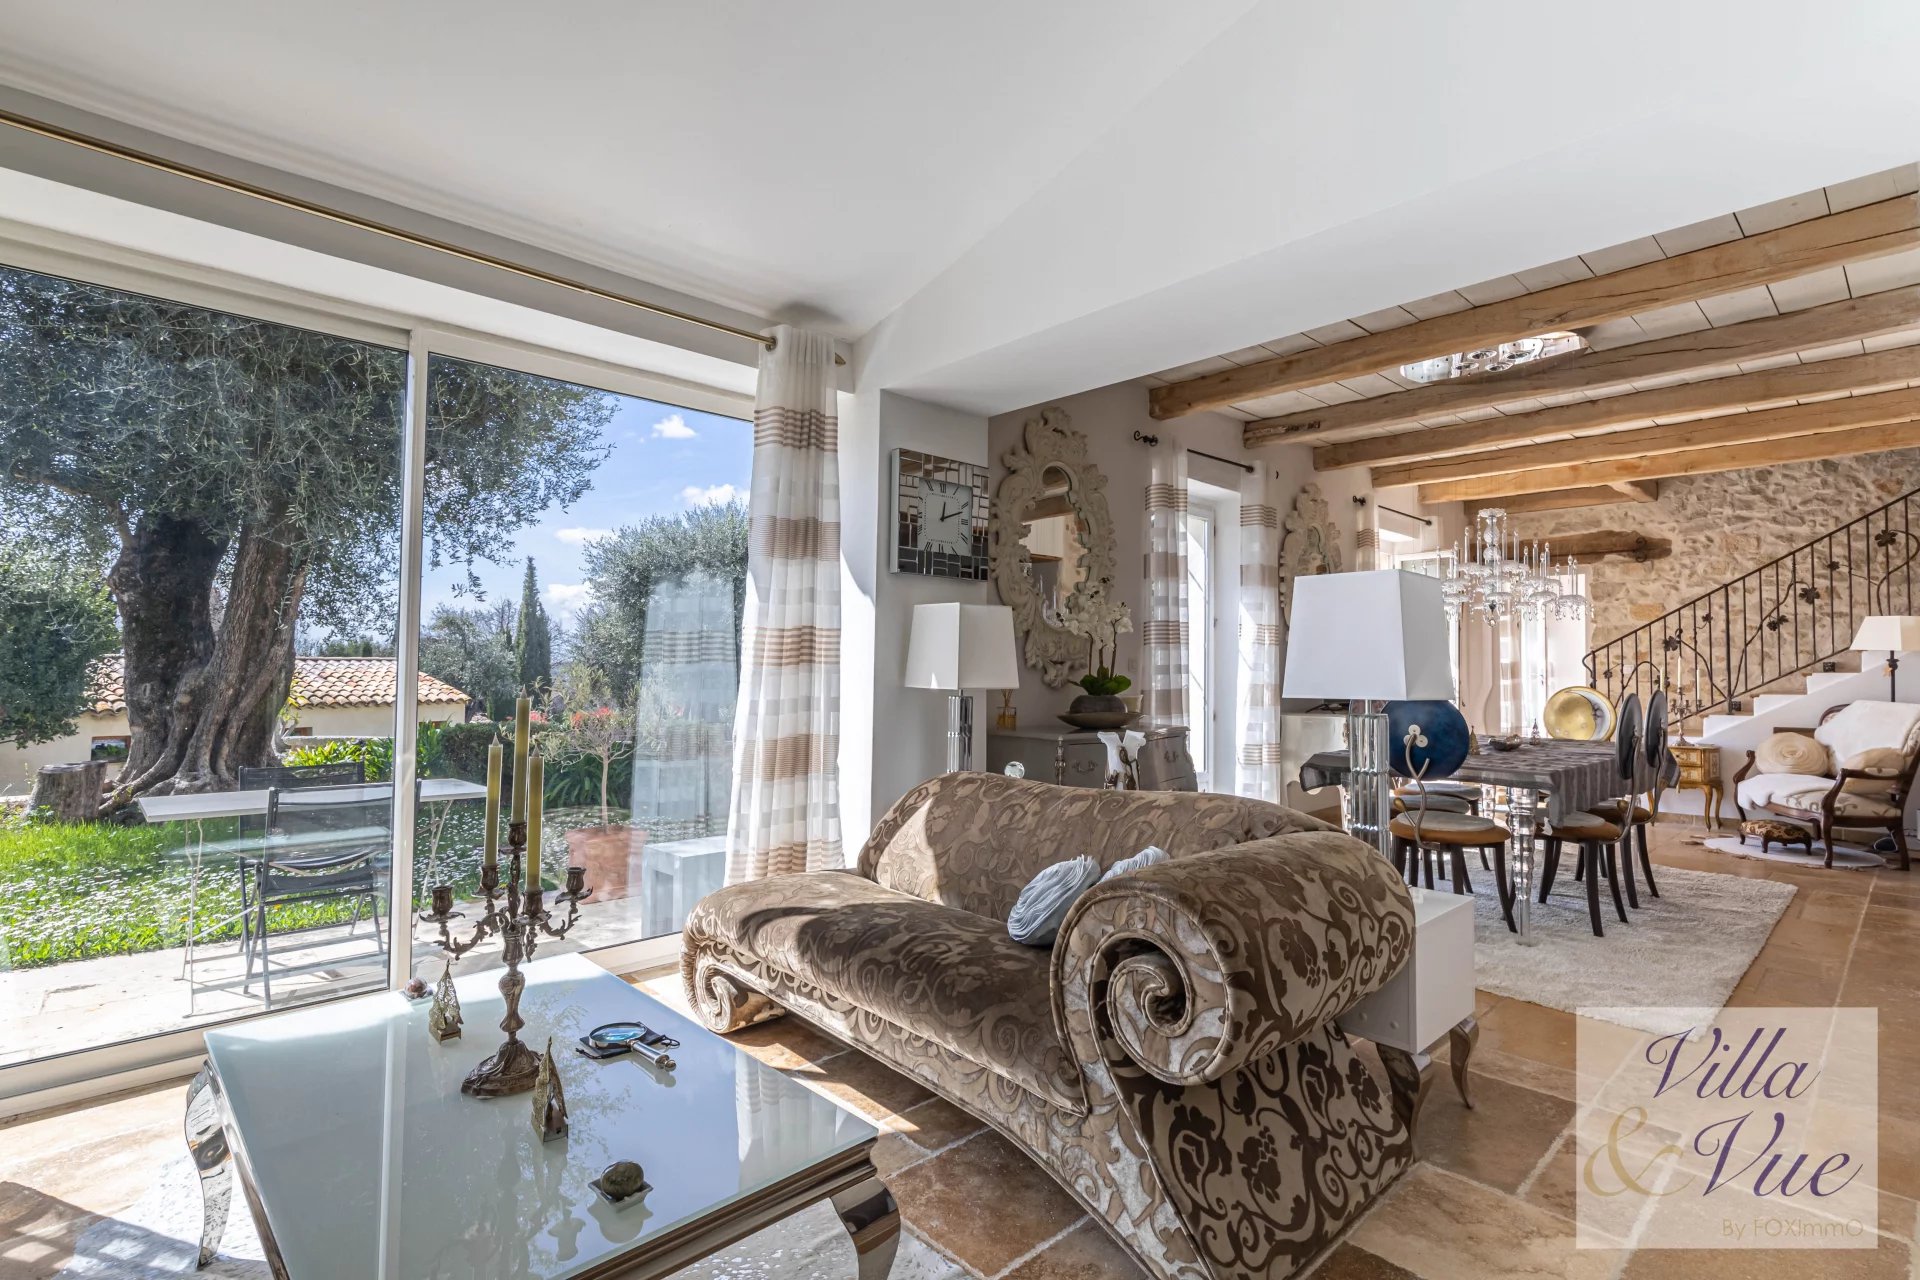 Sur la Cote d Azur, Bastide provençale entièrement rénovée, calme, piscine, jardin arboré, possibilité maison d'hôtes